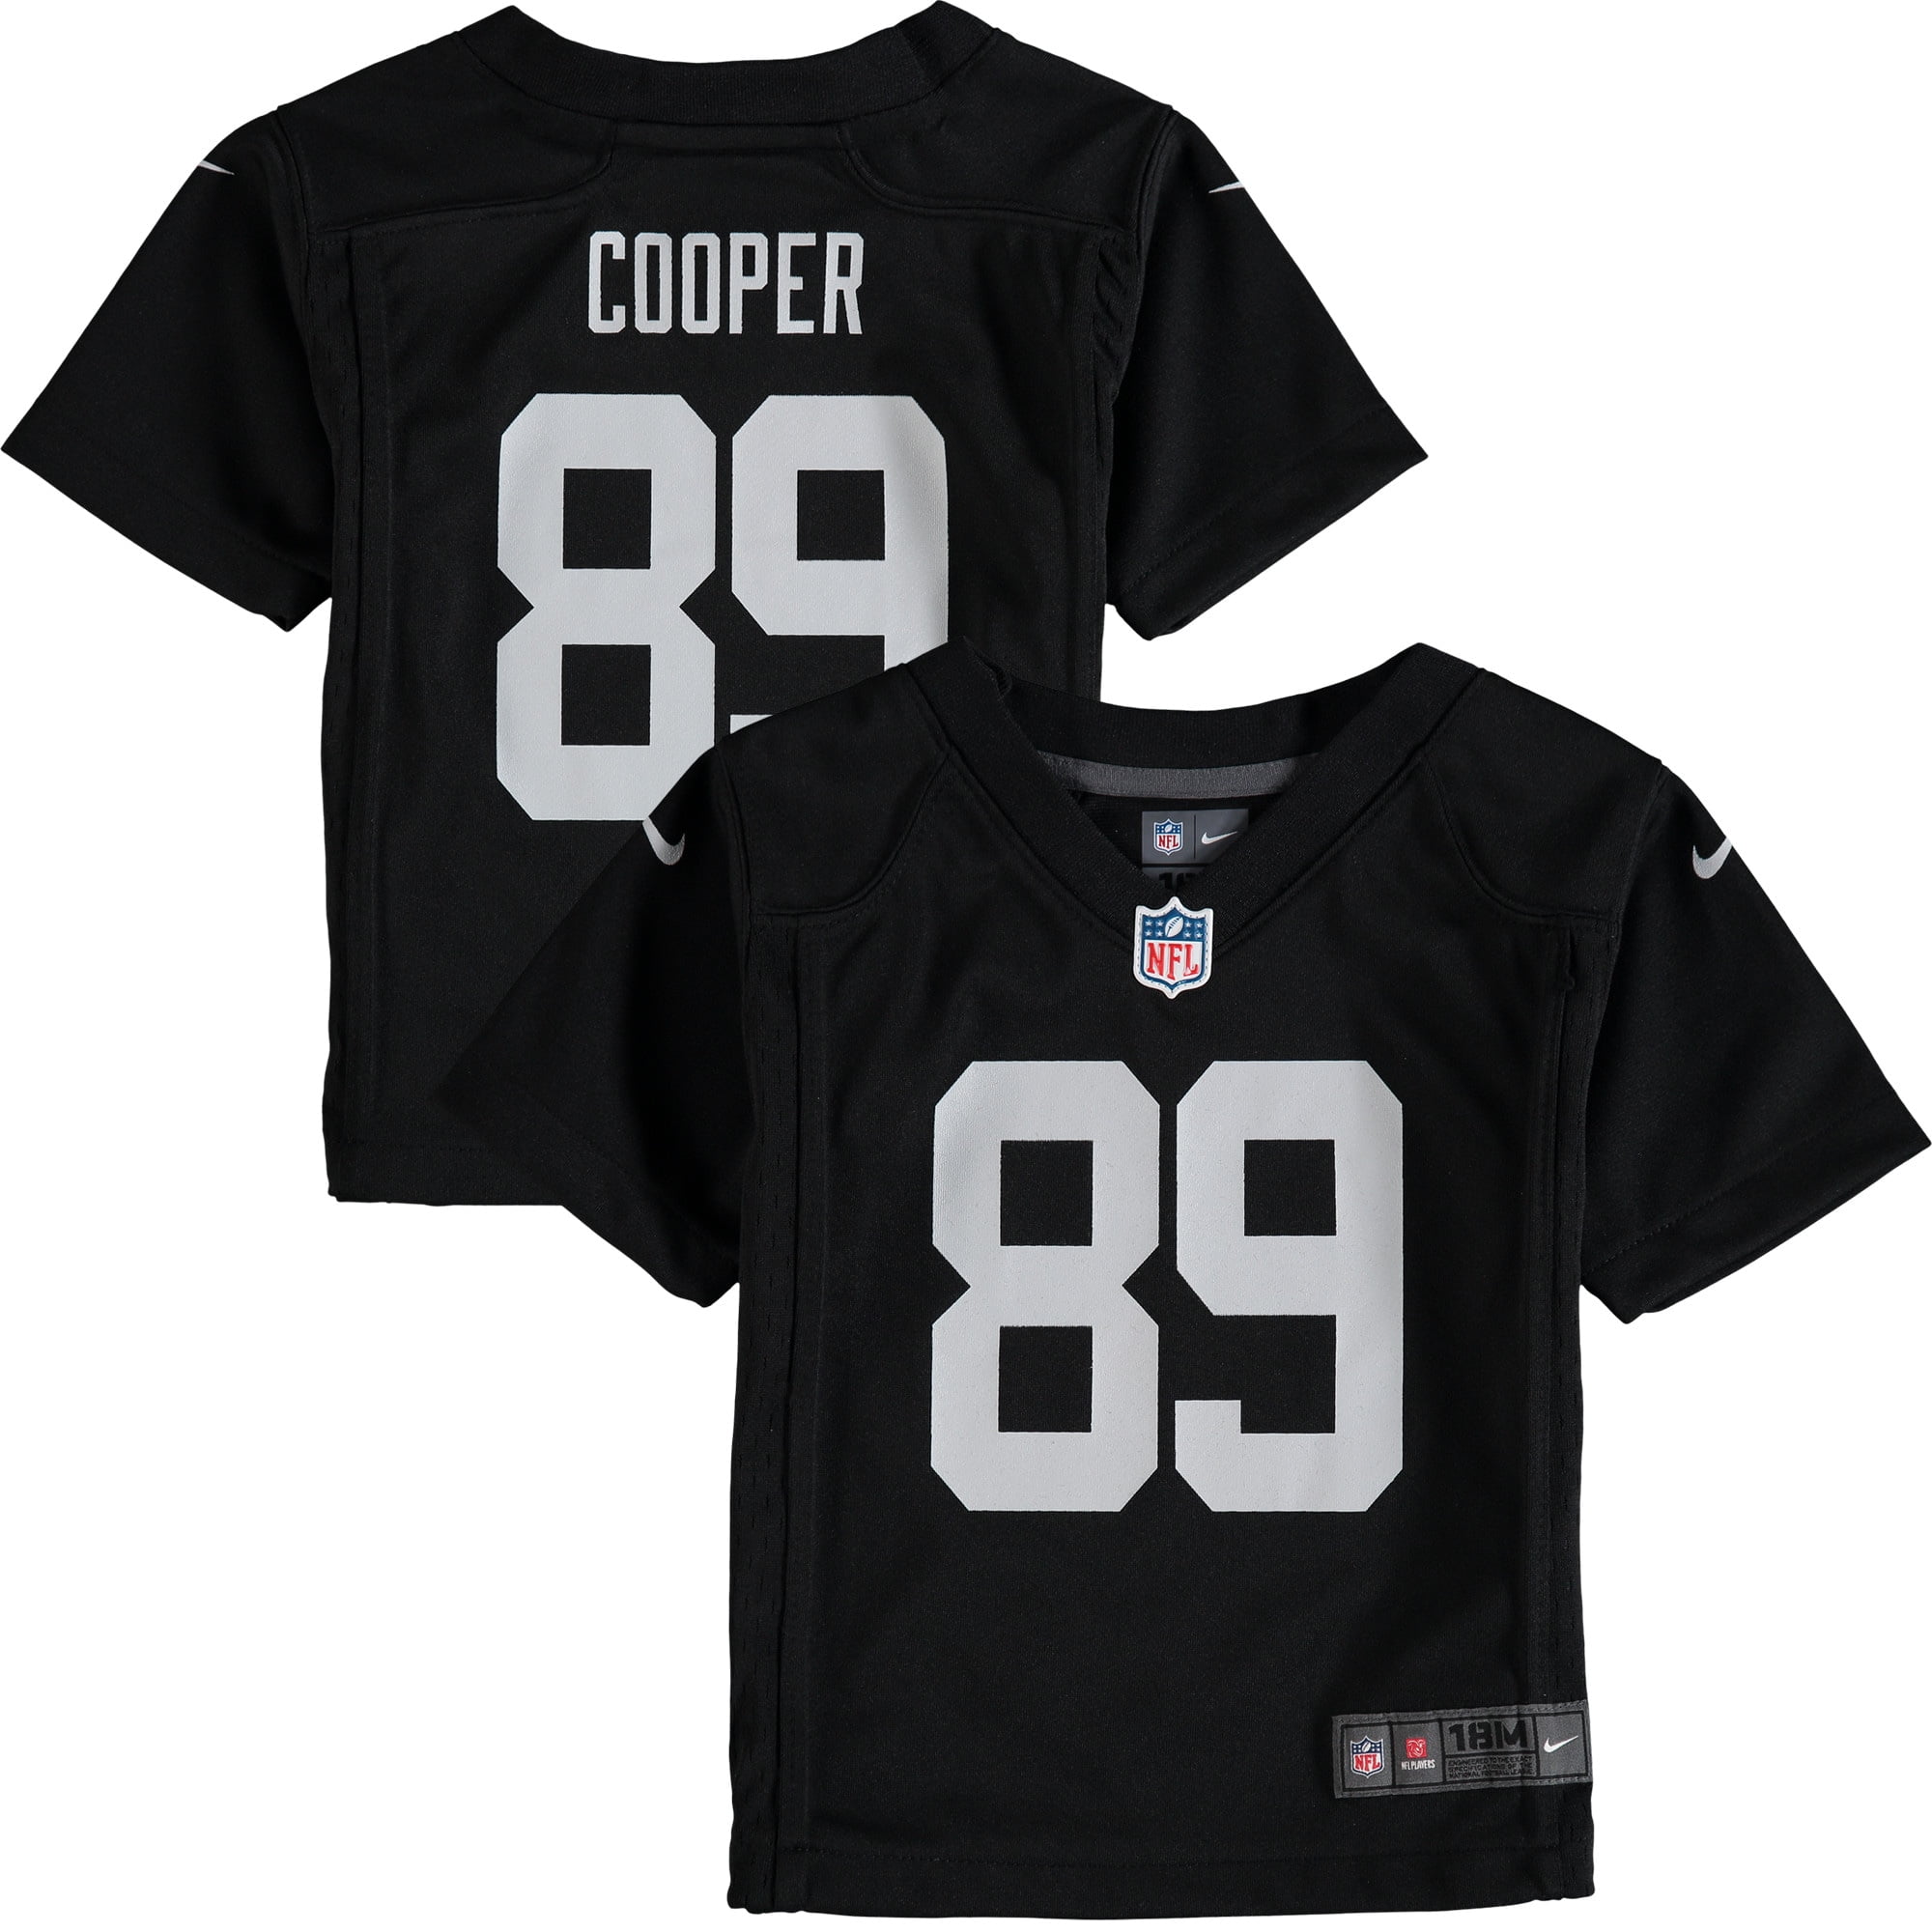 cooper 89 jersey